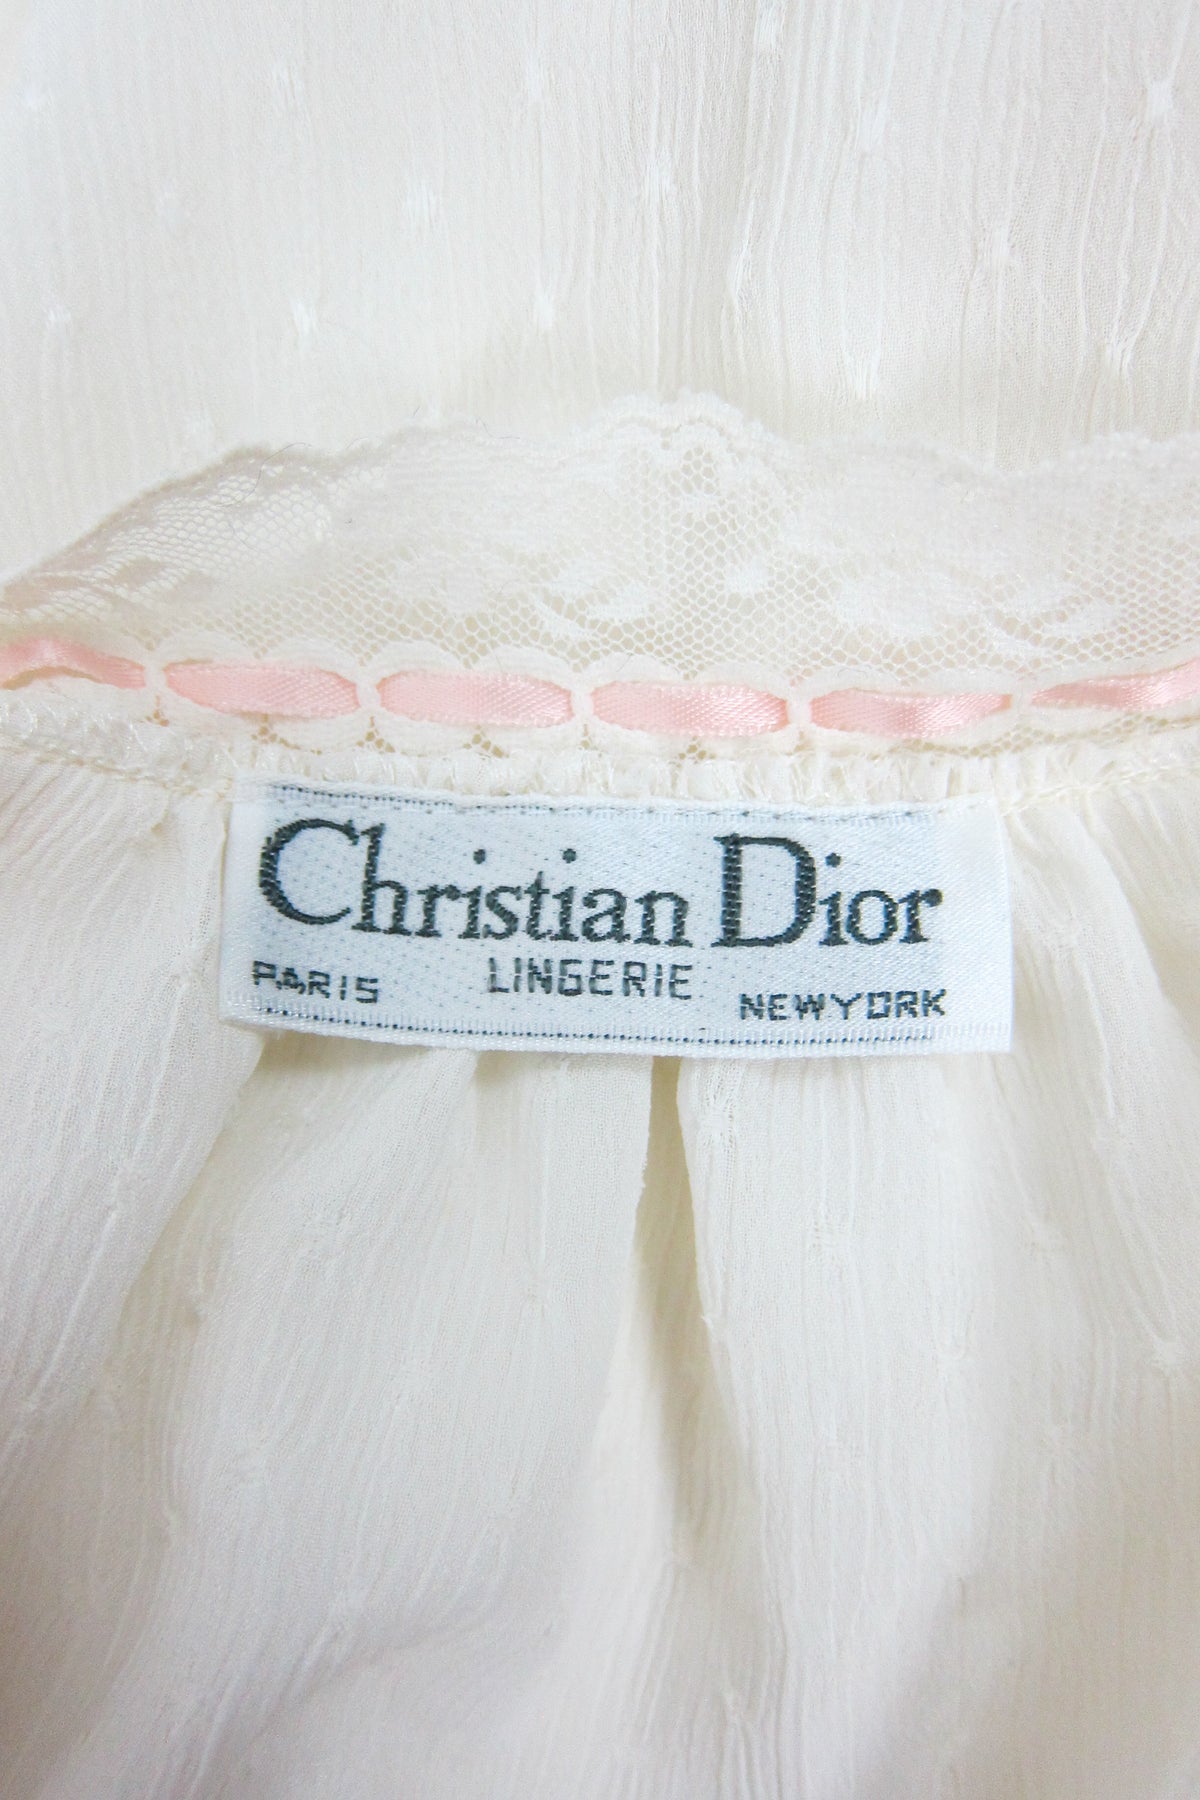 Vintage Christian Dior Lingerie